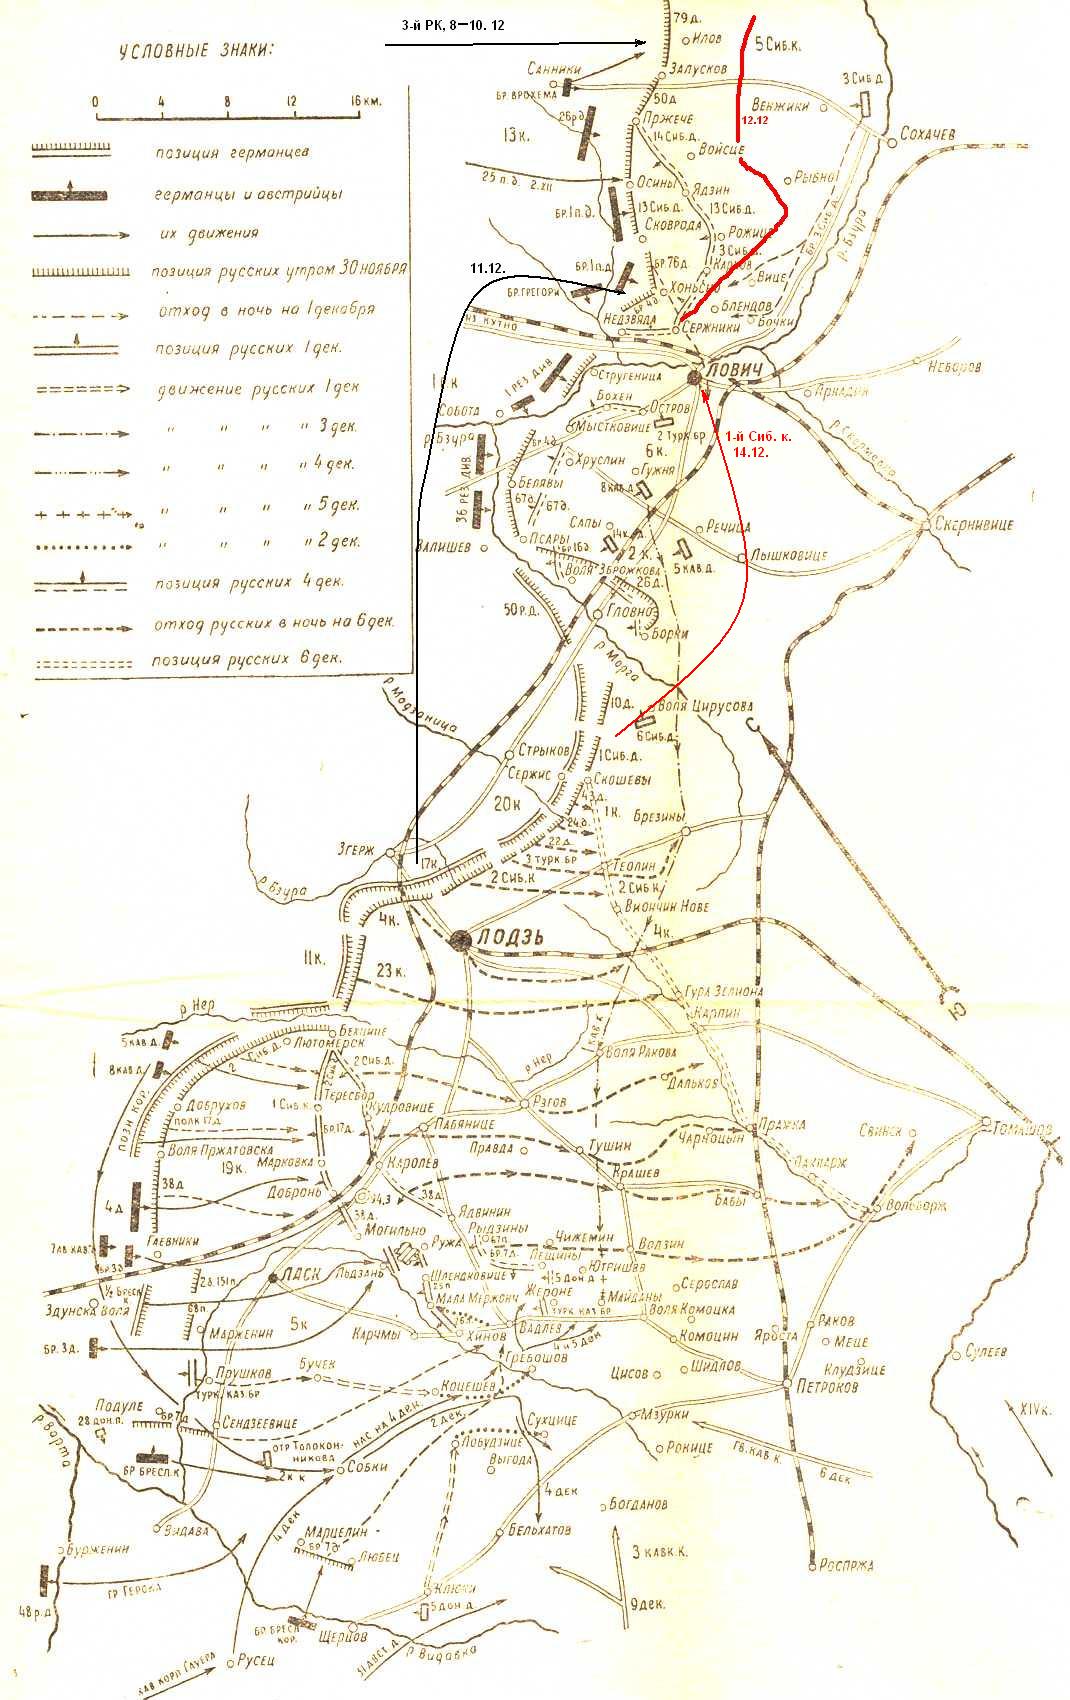 Схема Ловичского и Пабьяницкого сражений в начале декабря 1914 г